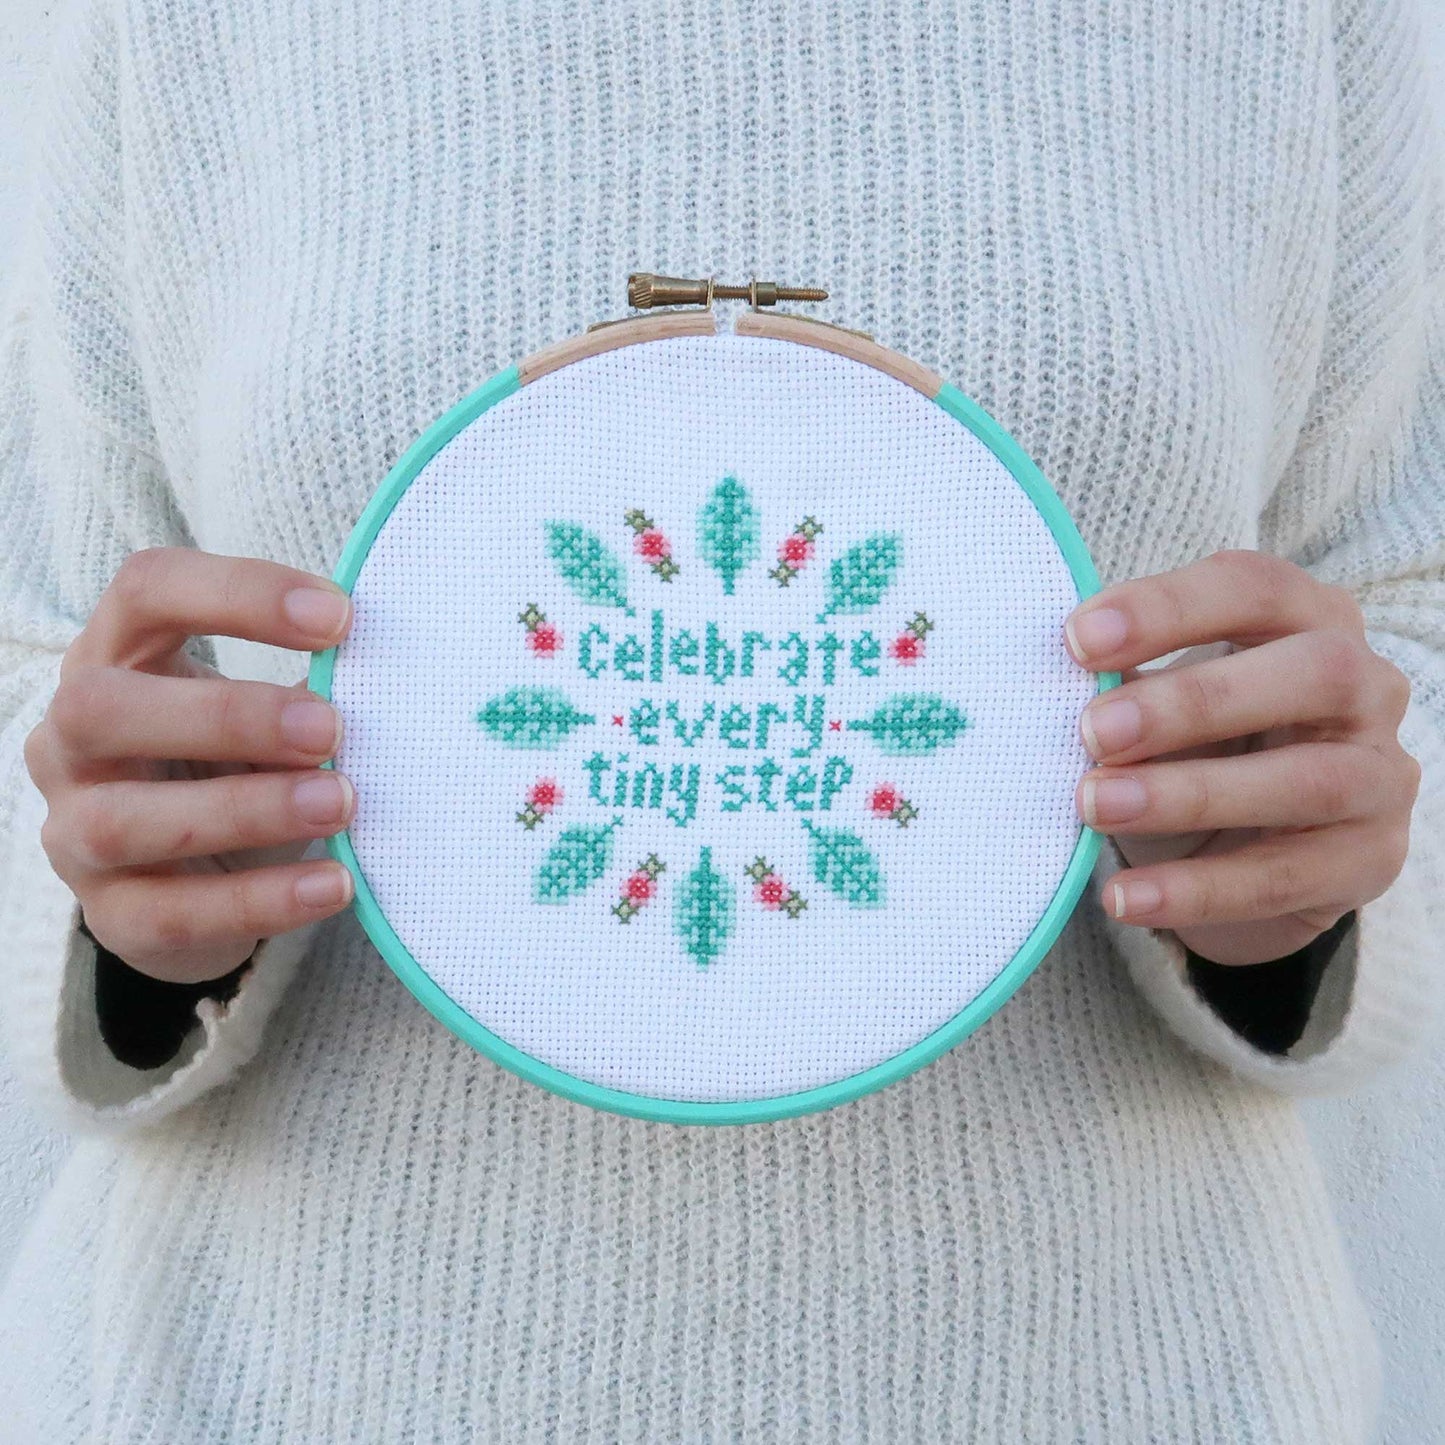 Celebrate Every Tiny Step - Cross Stitch Kit